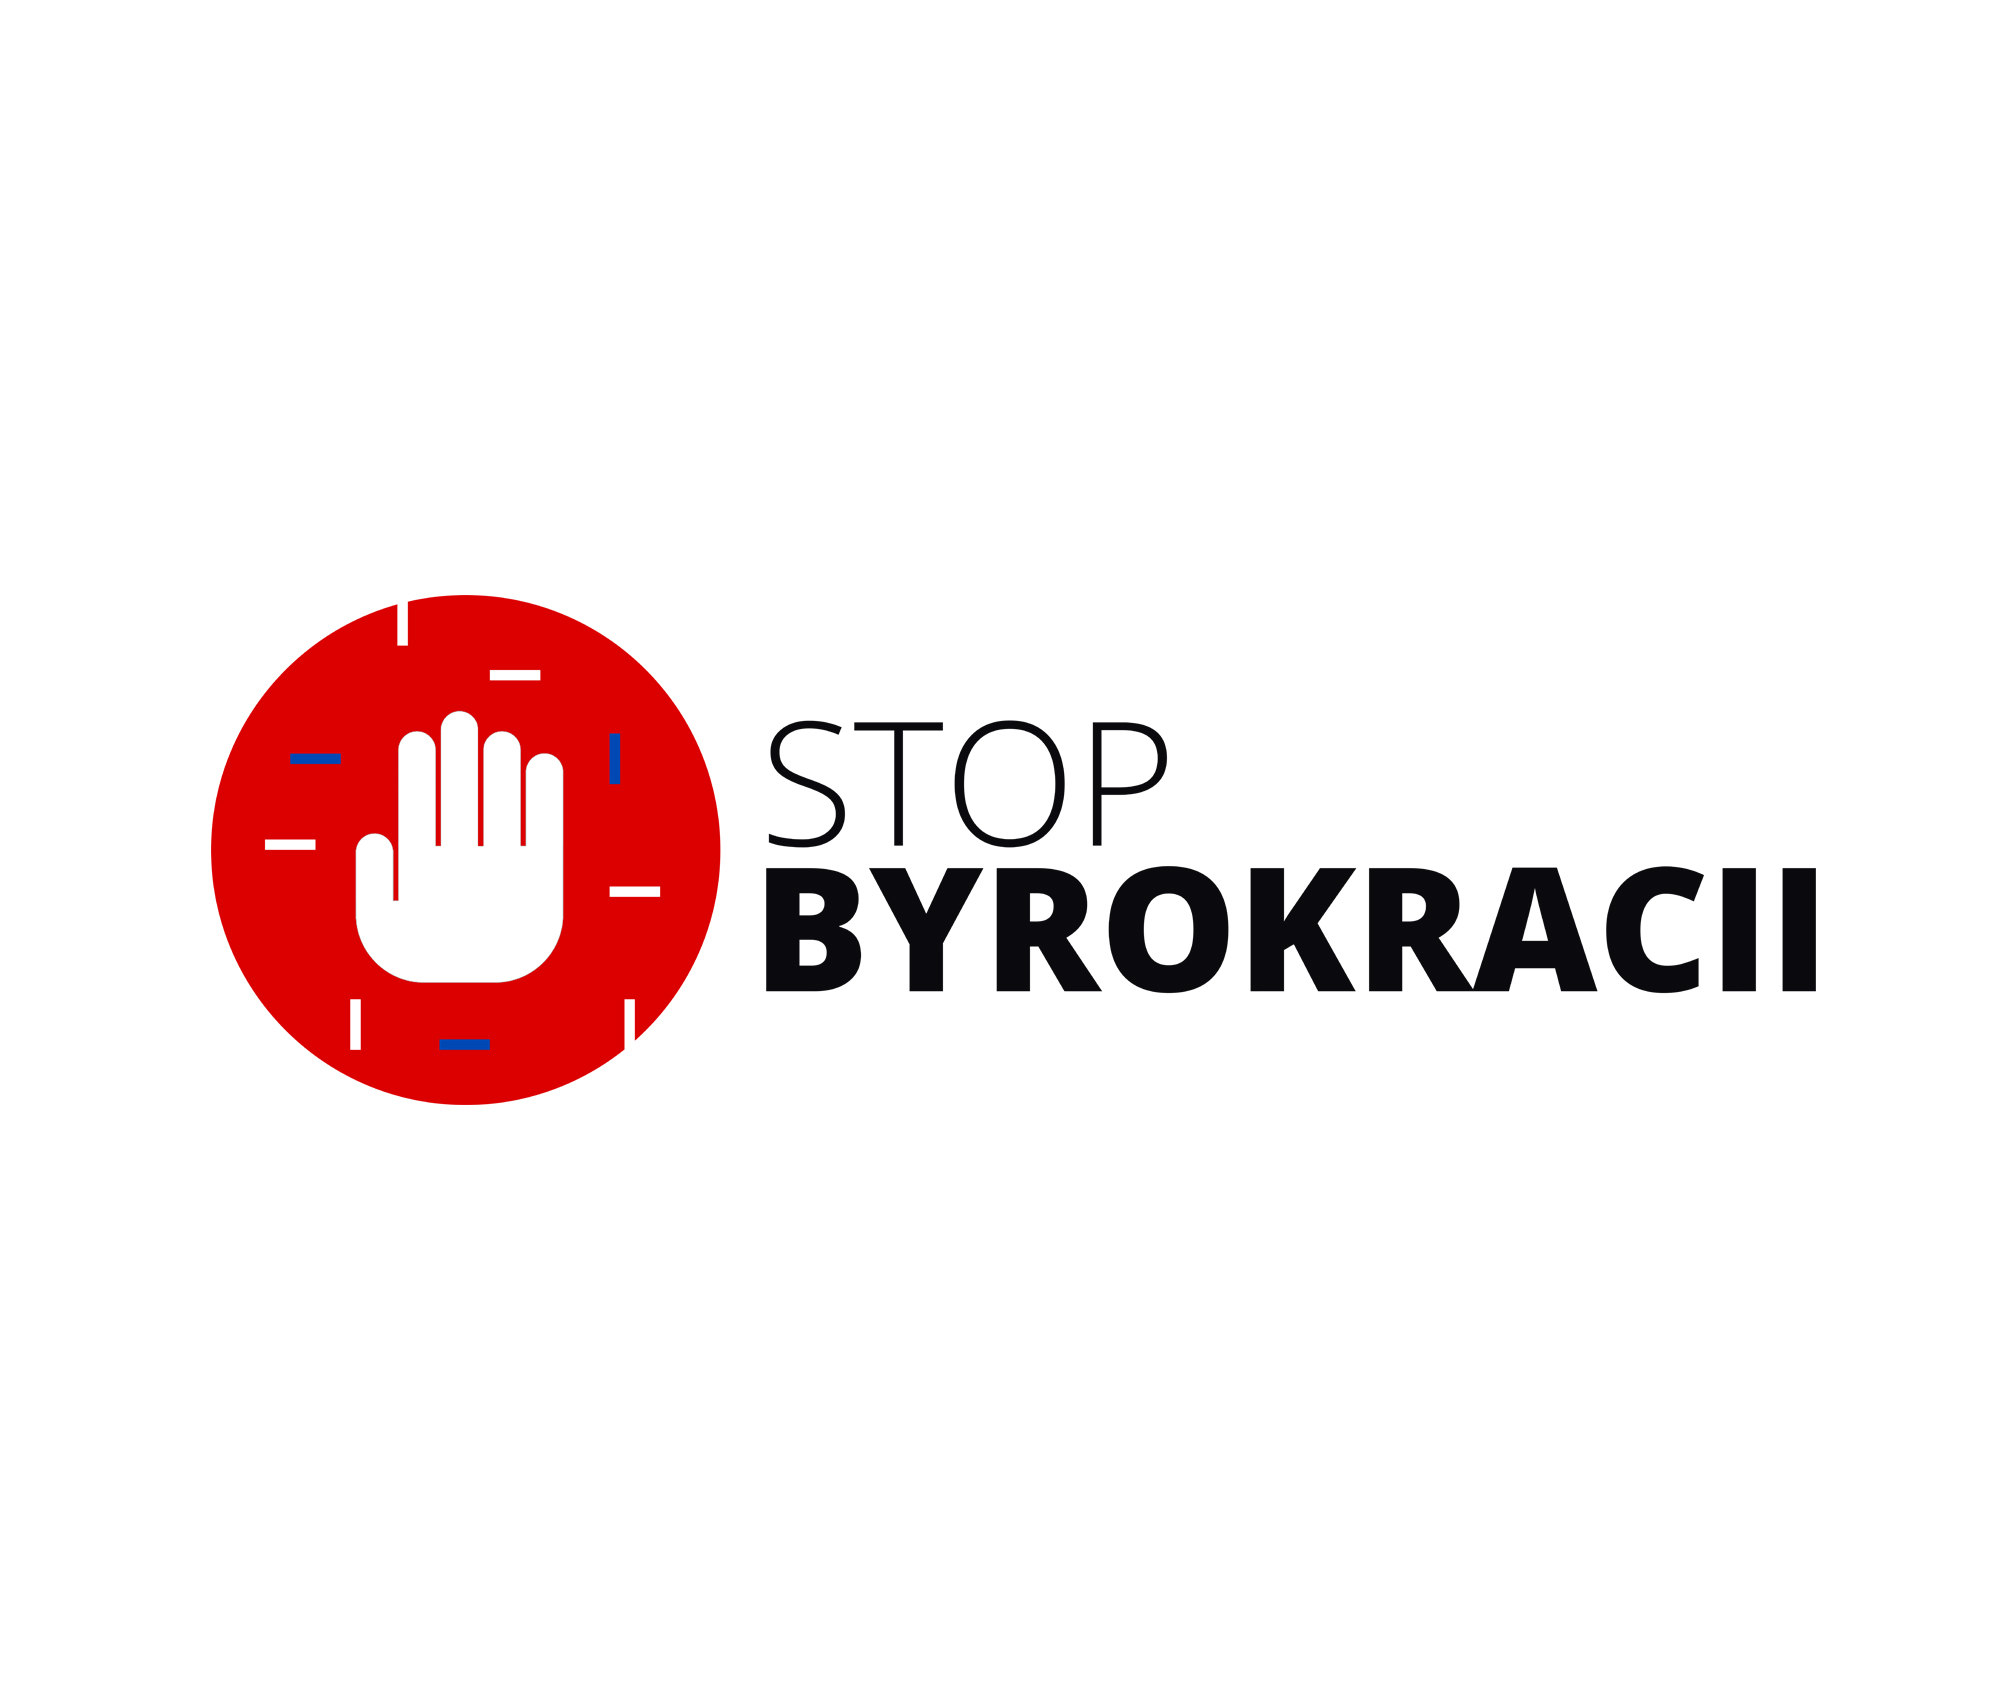 STOP BYROKRACII